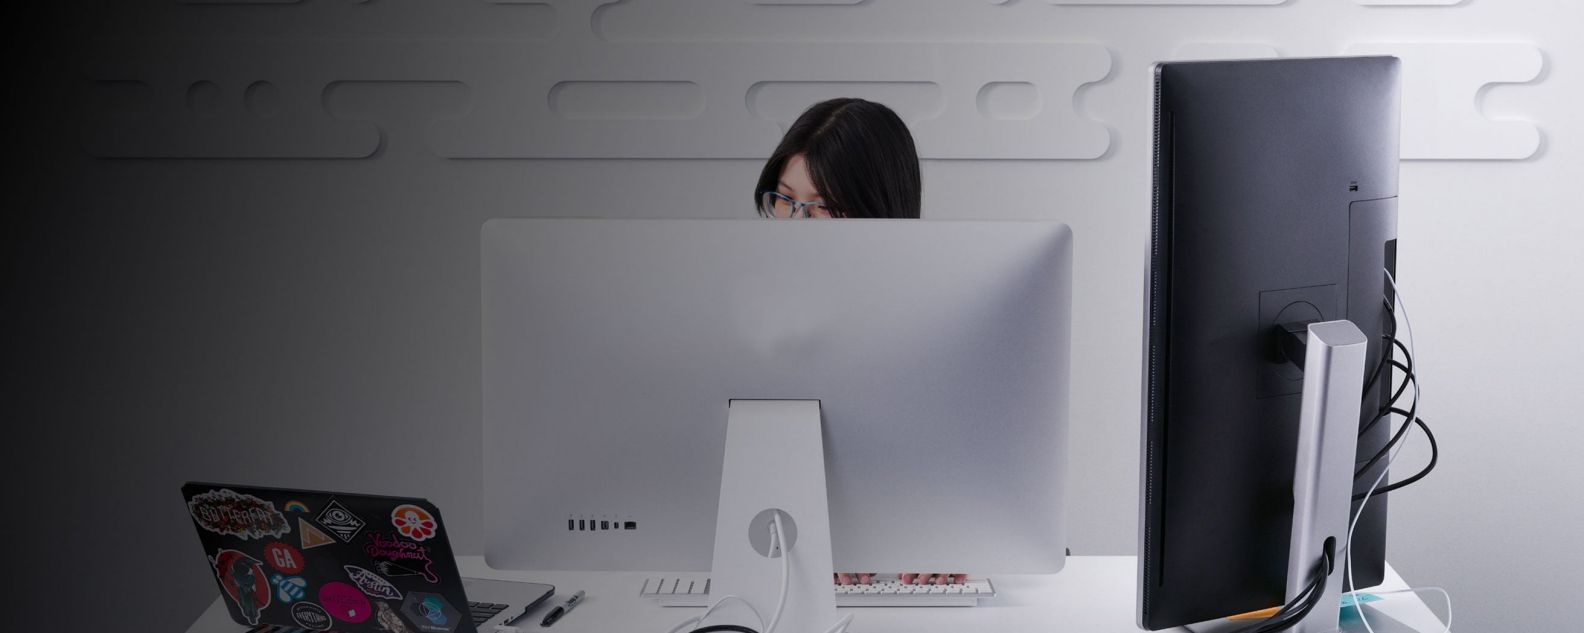 Frau arbeitet konzentriert vor einem Laptop-Monitor